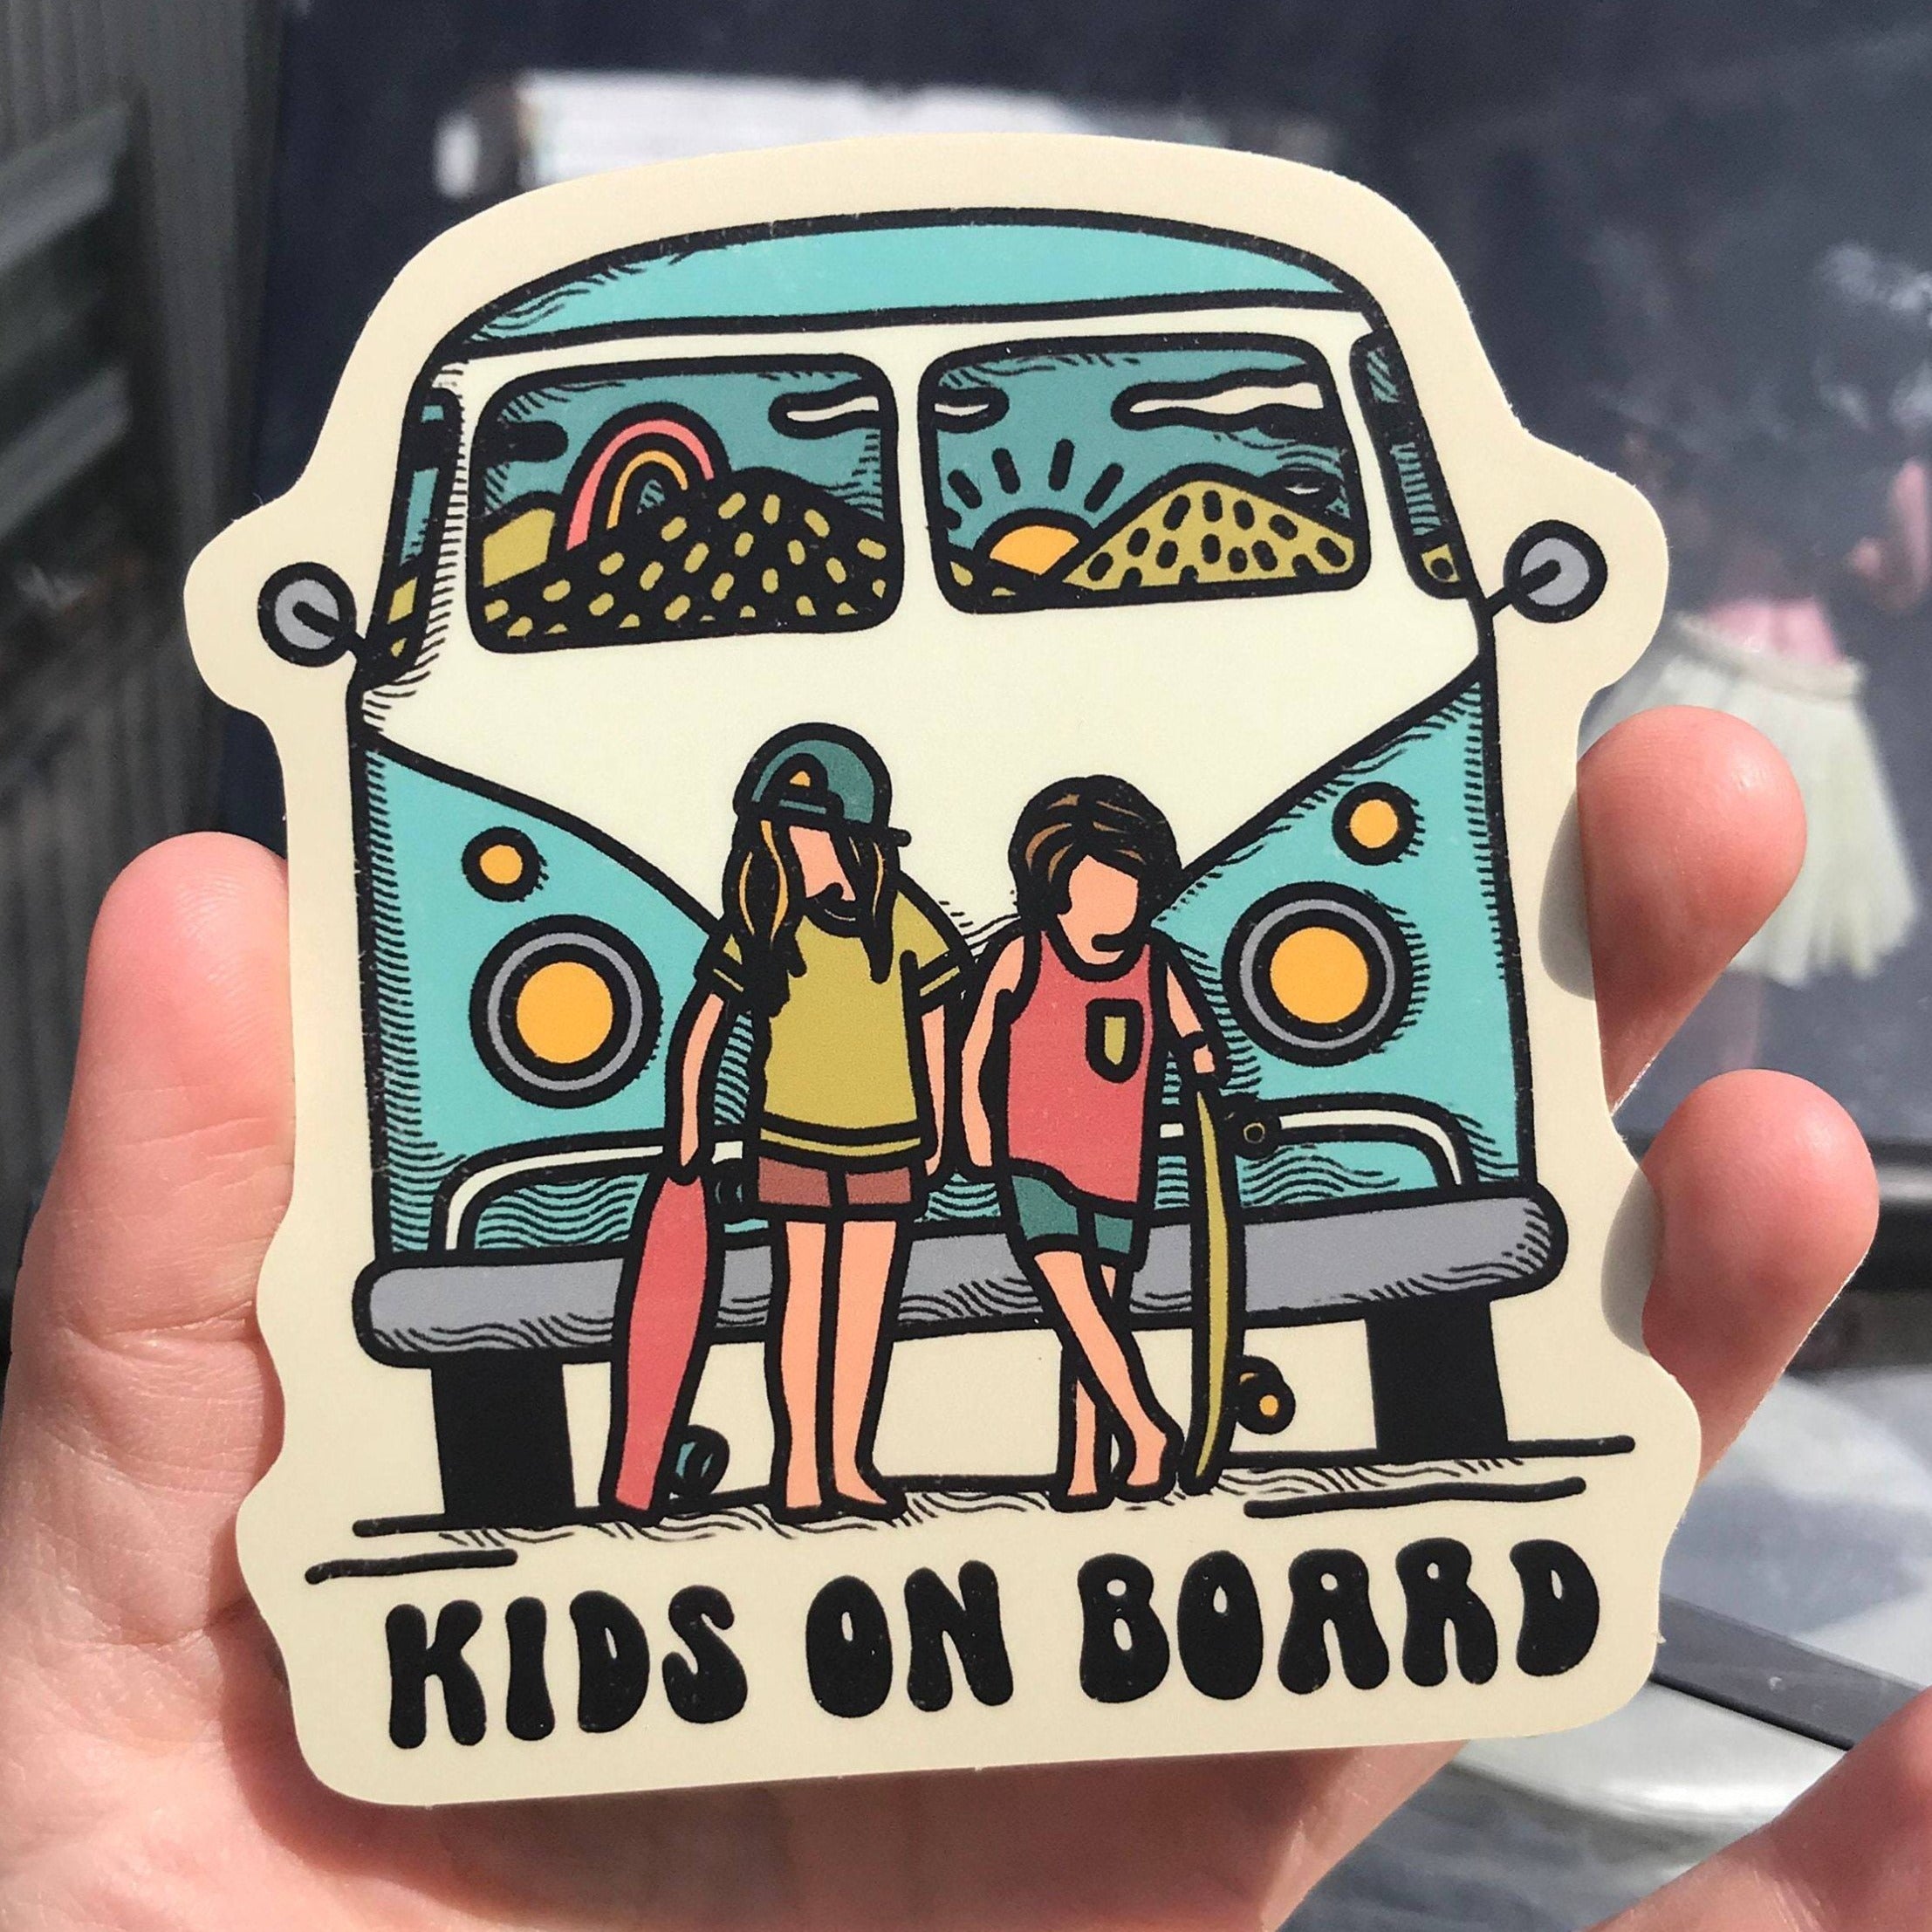 Kids on board